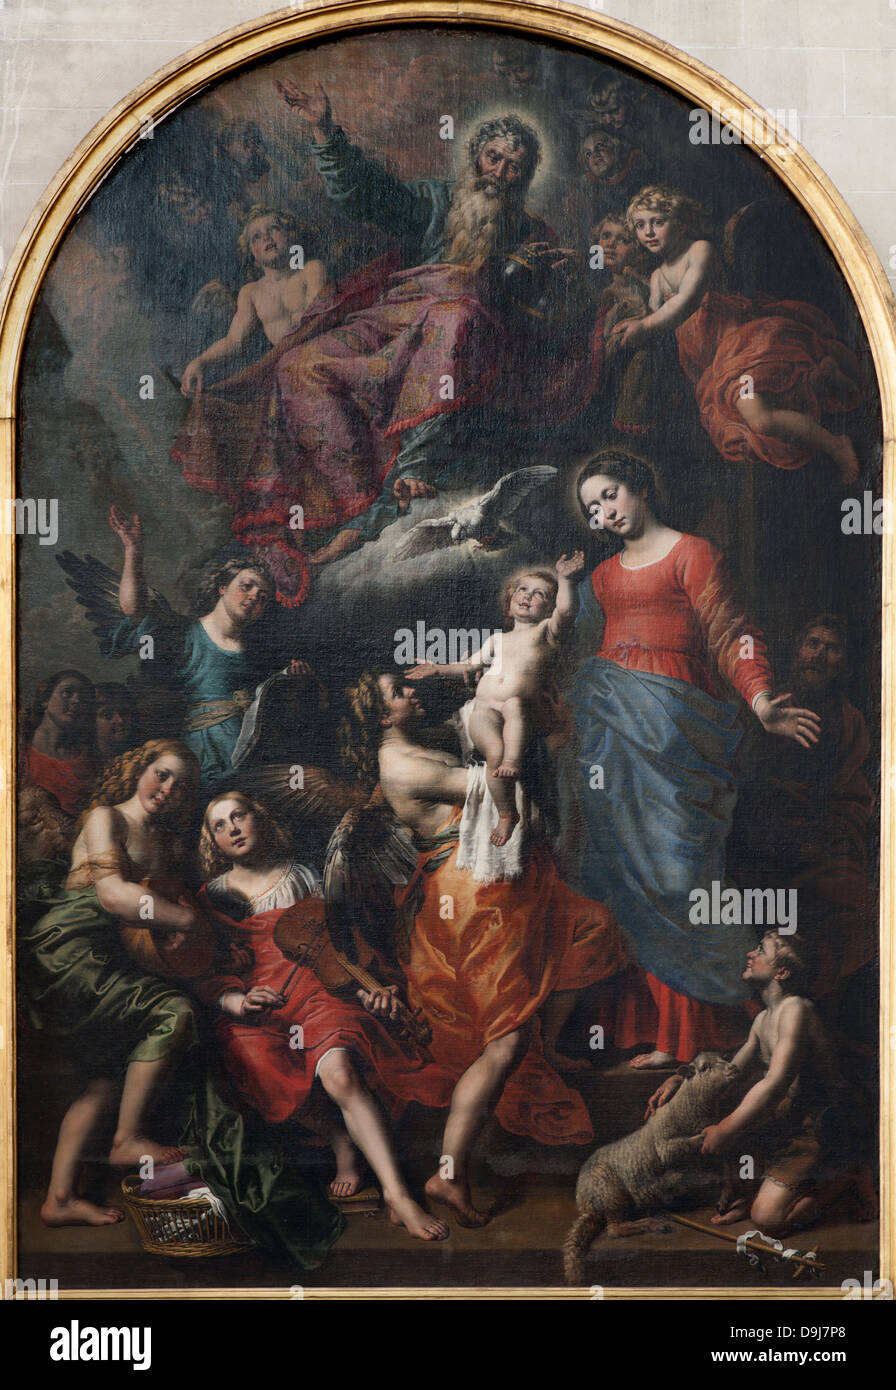 Bruxelles - 21 giugno: Santa Trinità, la Vergine Maria e San Giovanni Battista di vernice Foto Stock